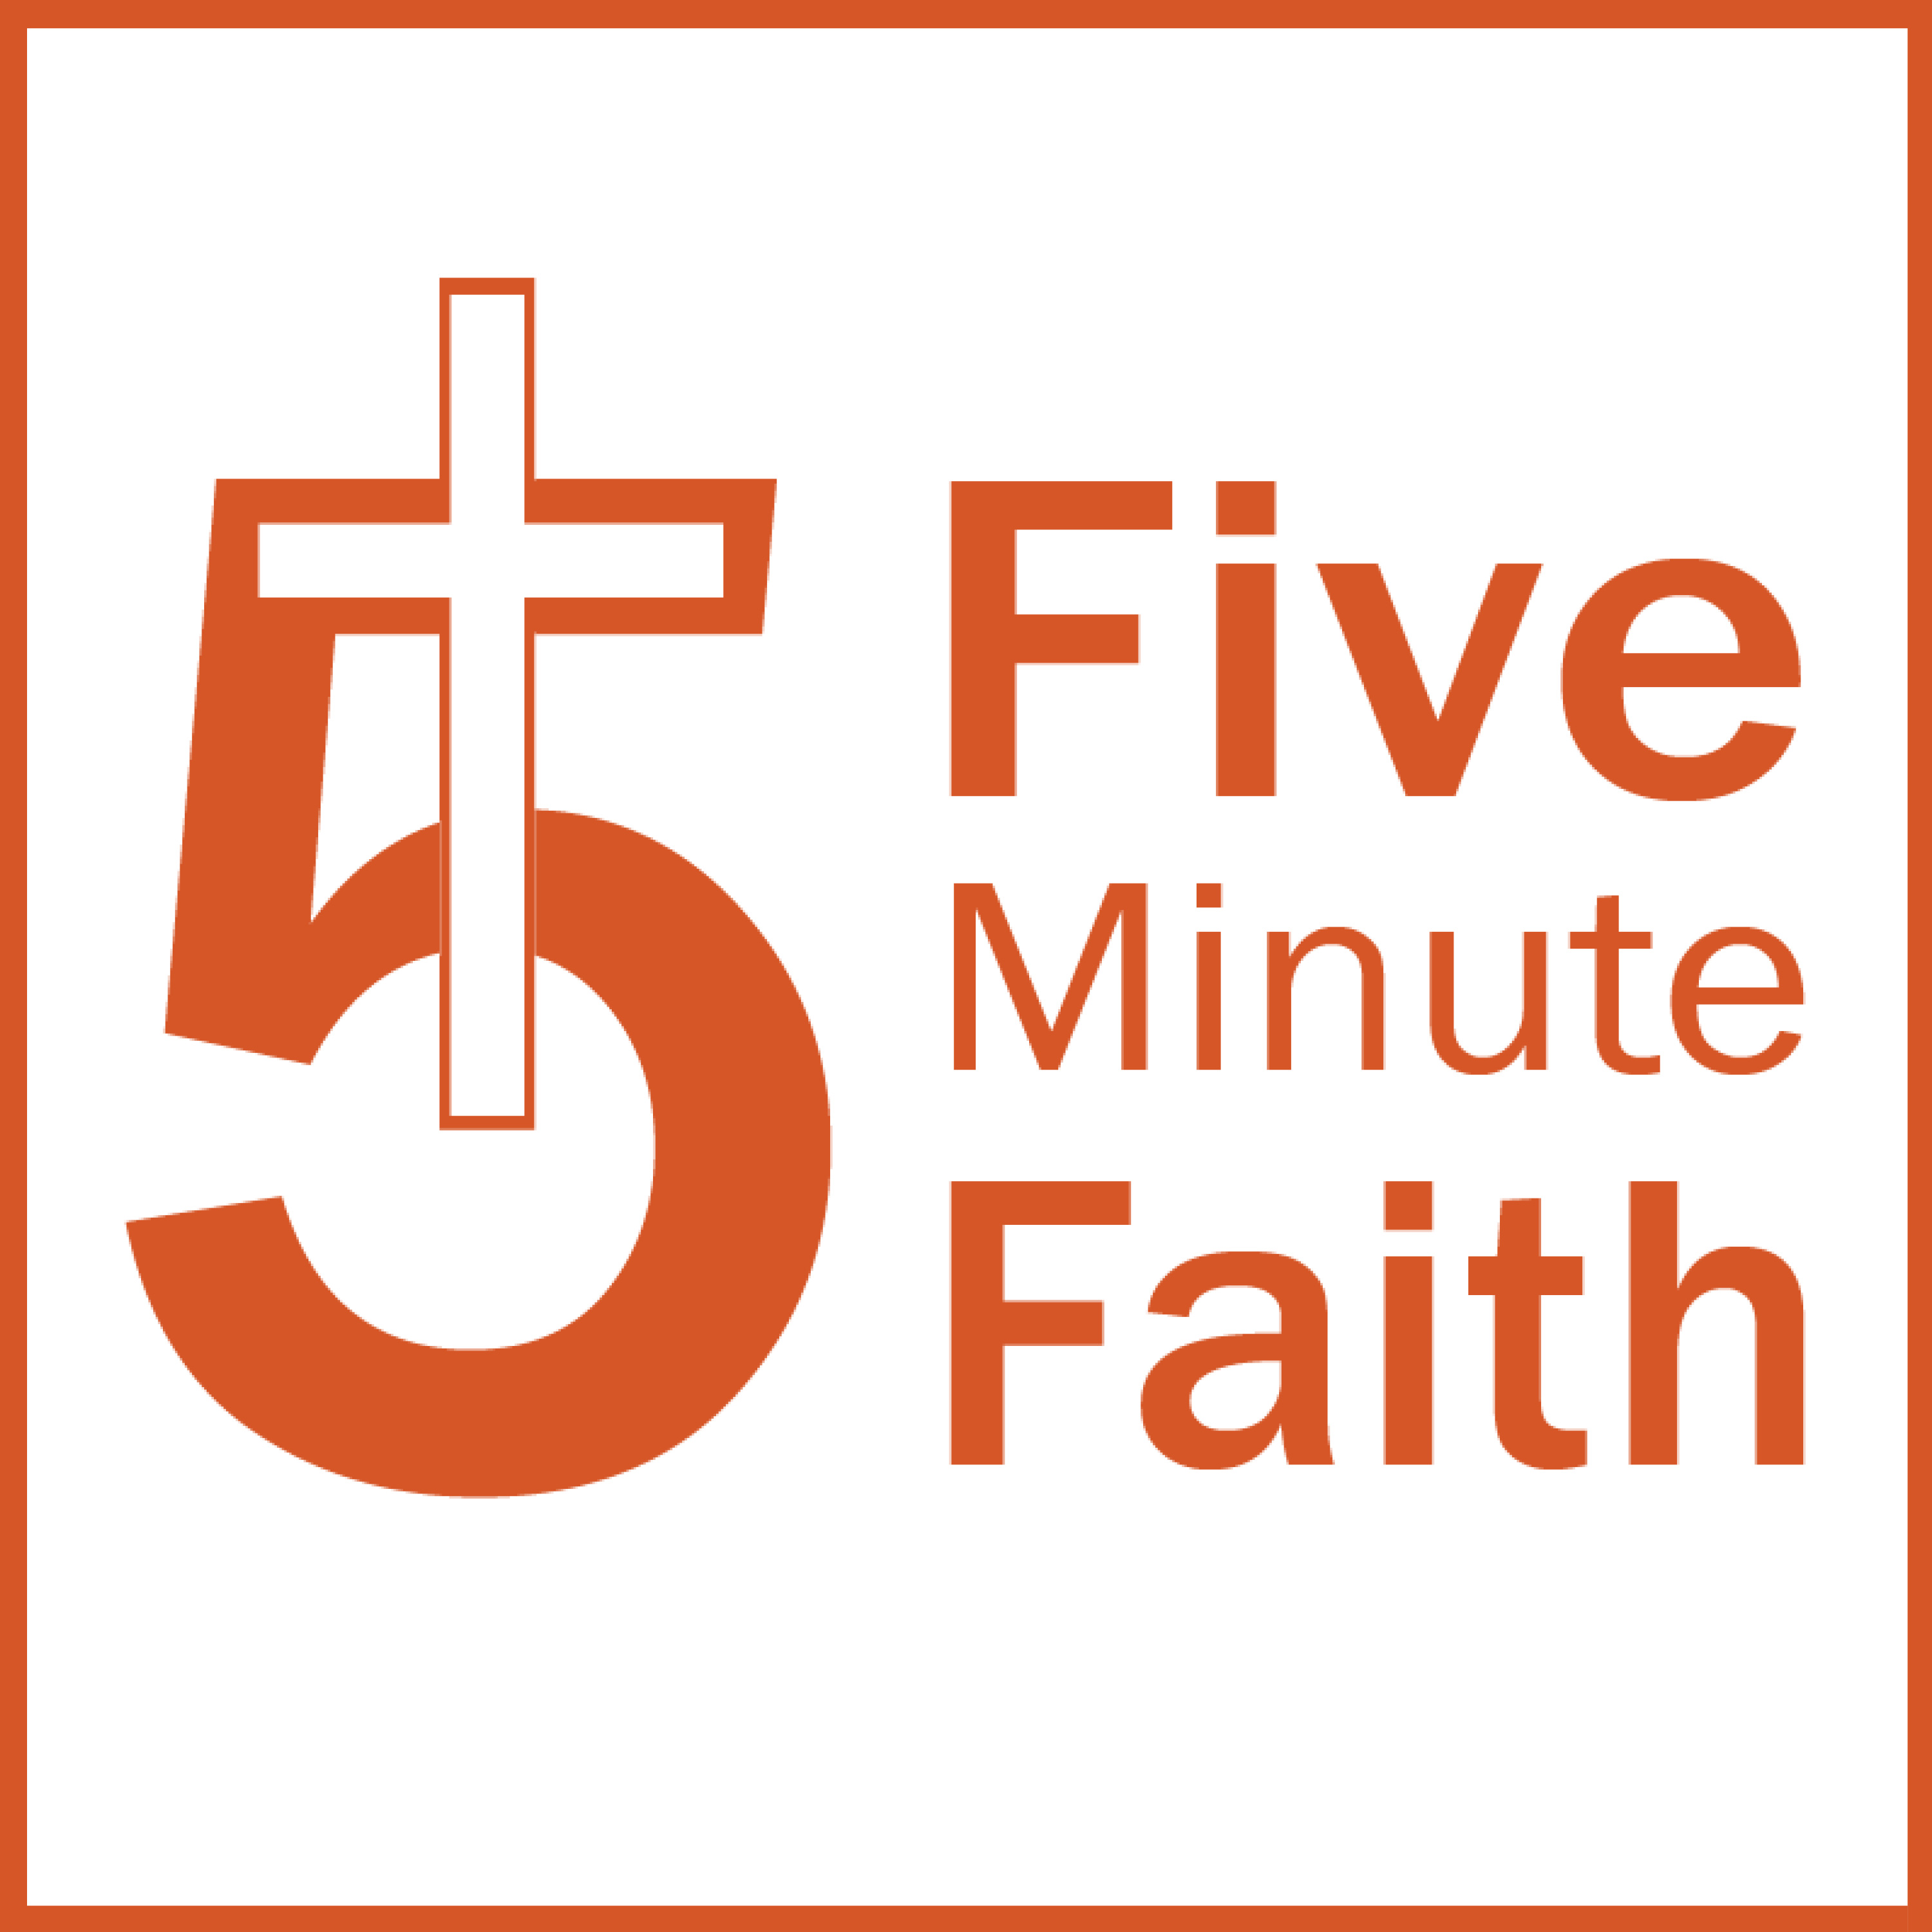 Five Minute Faith